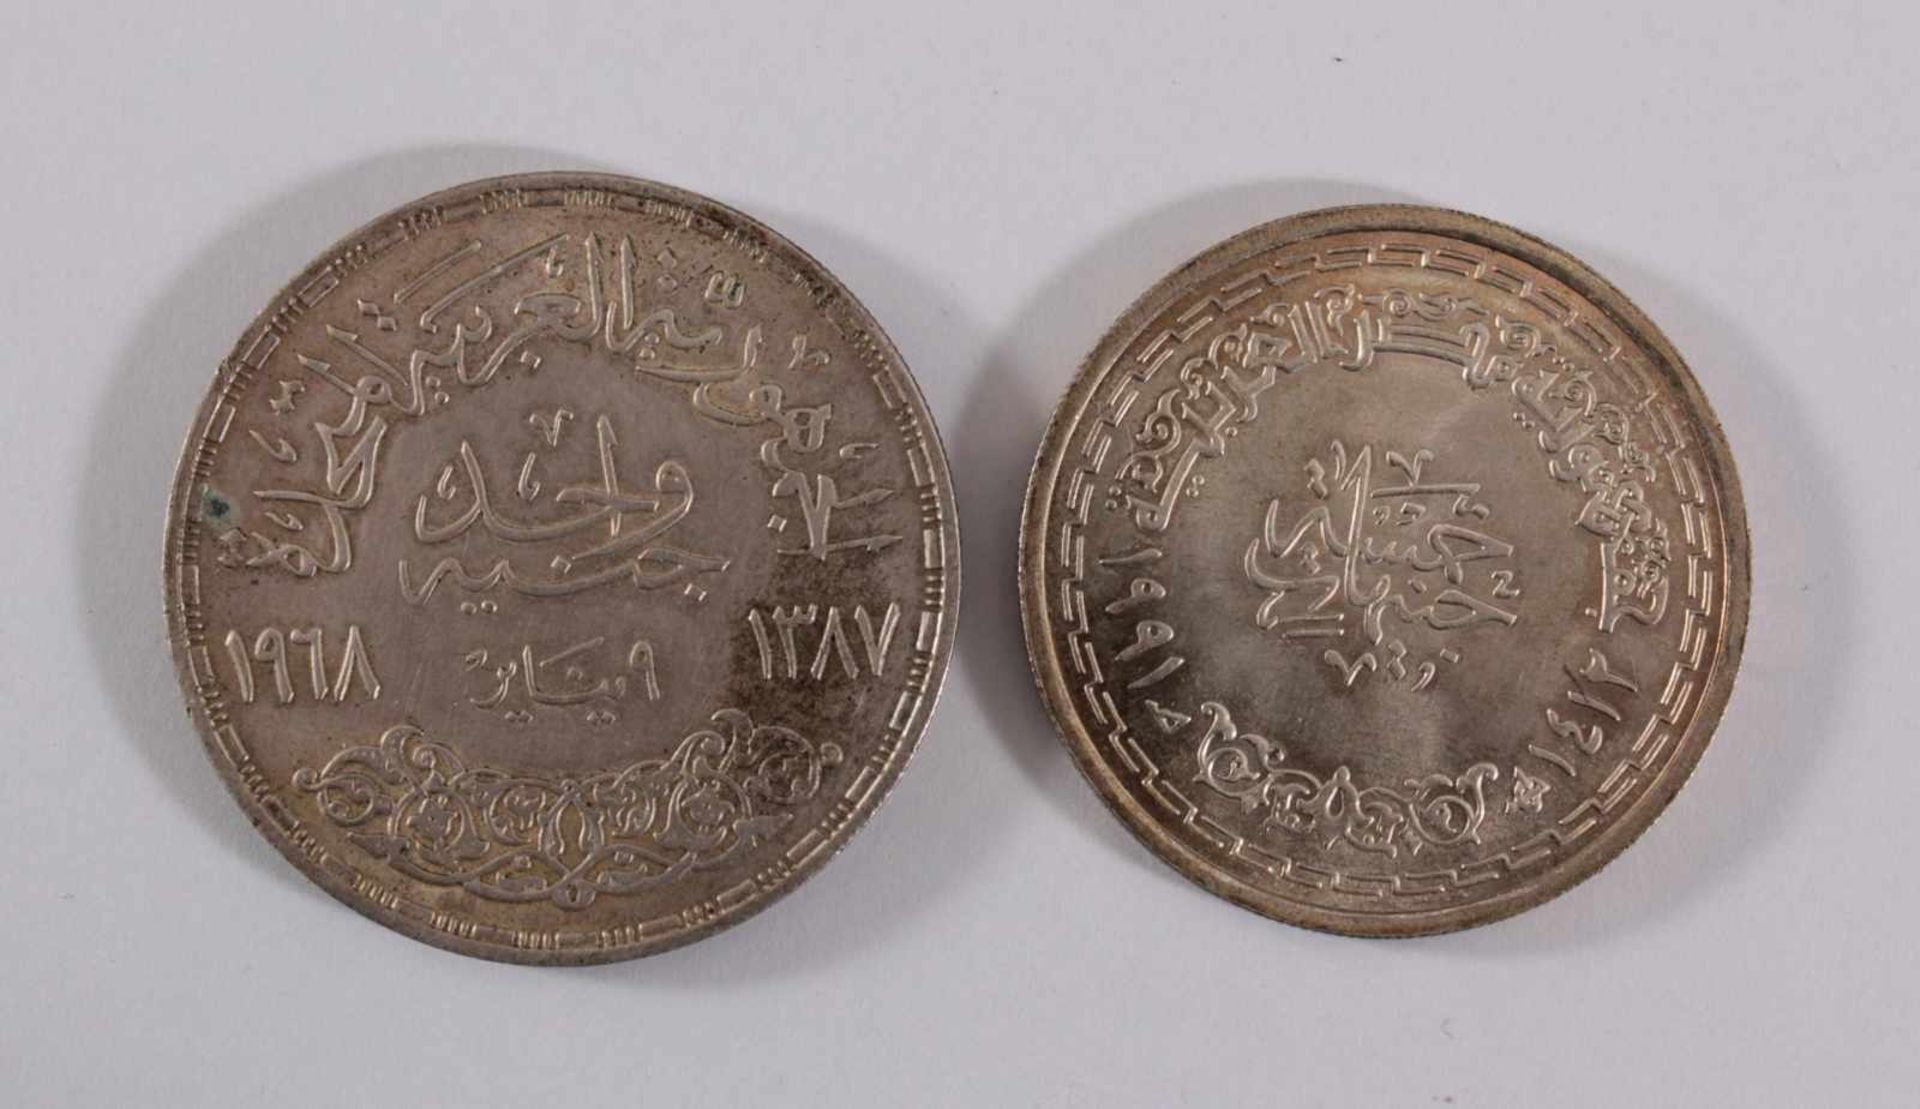 2 Silbermedaillen, 1974 und 1991. Arabische Welt / IslamErhaltung vz, Patina, Durchmesser 37 und - Bild 2 aus 2